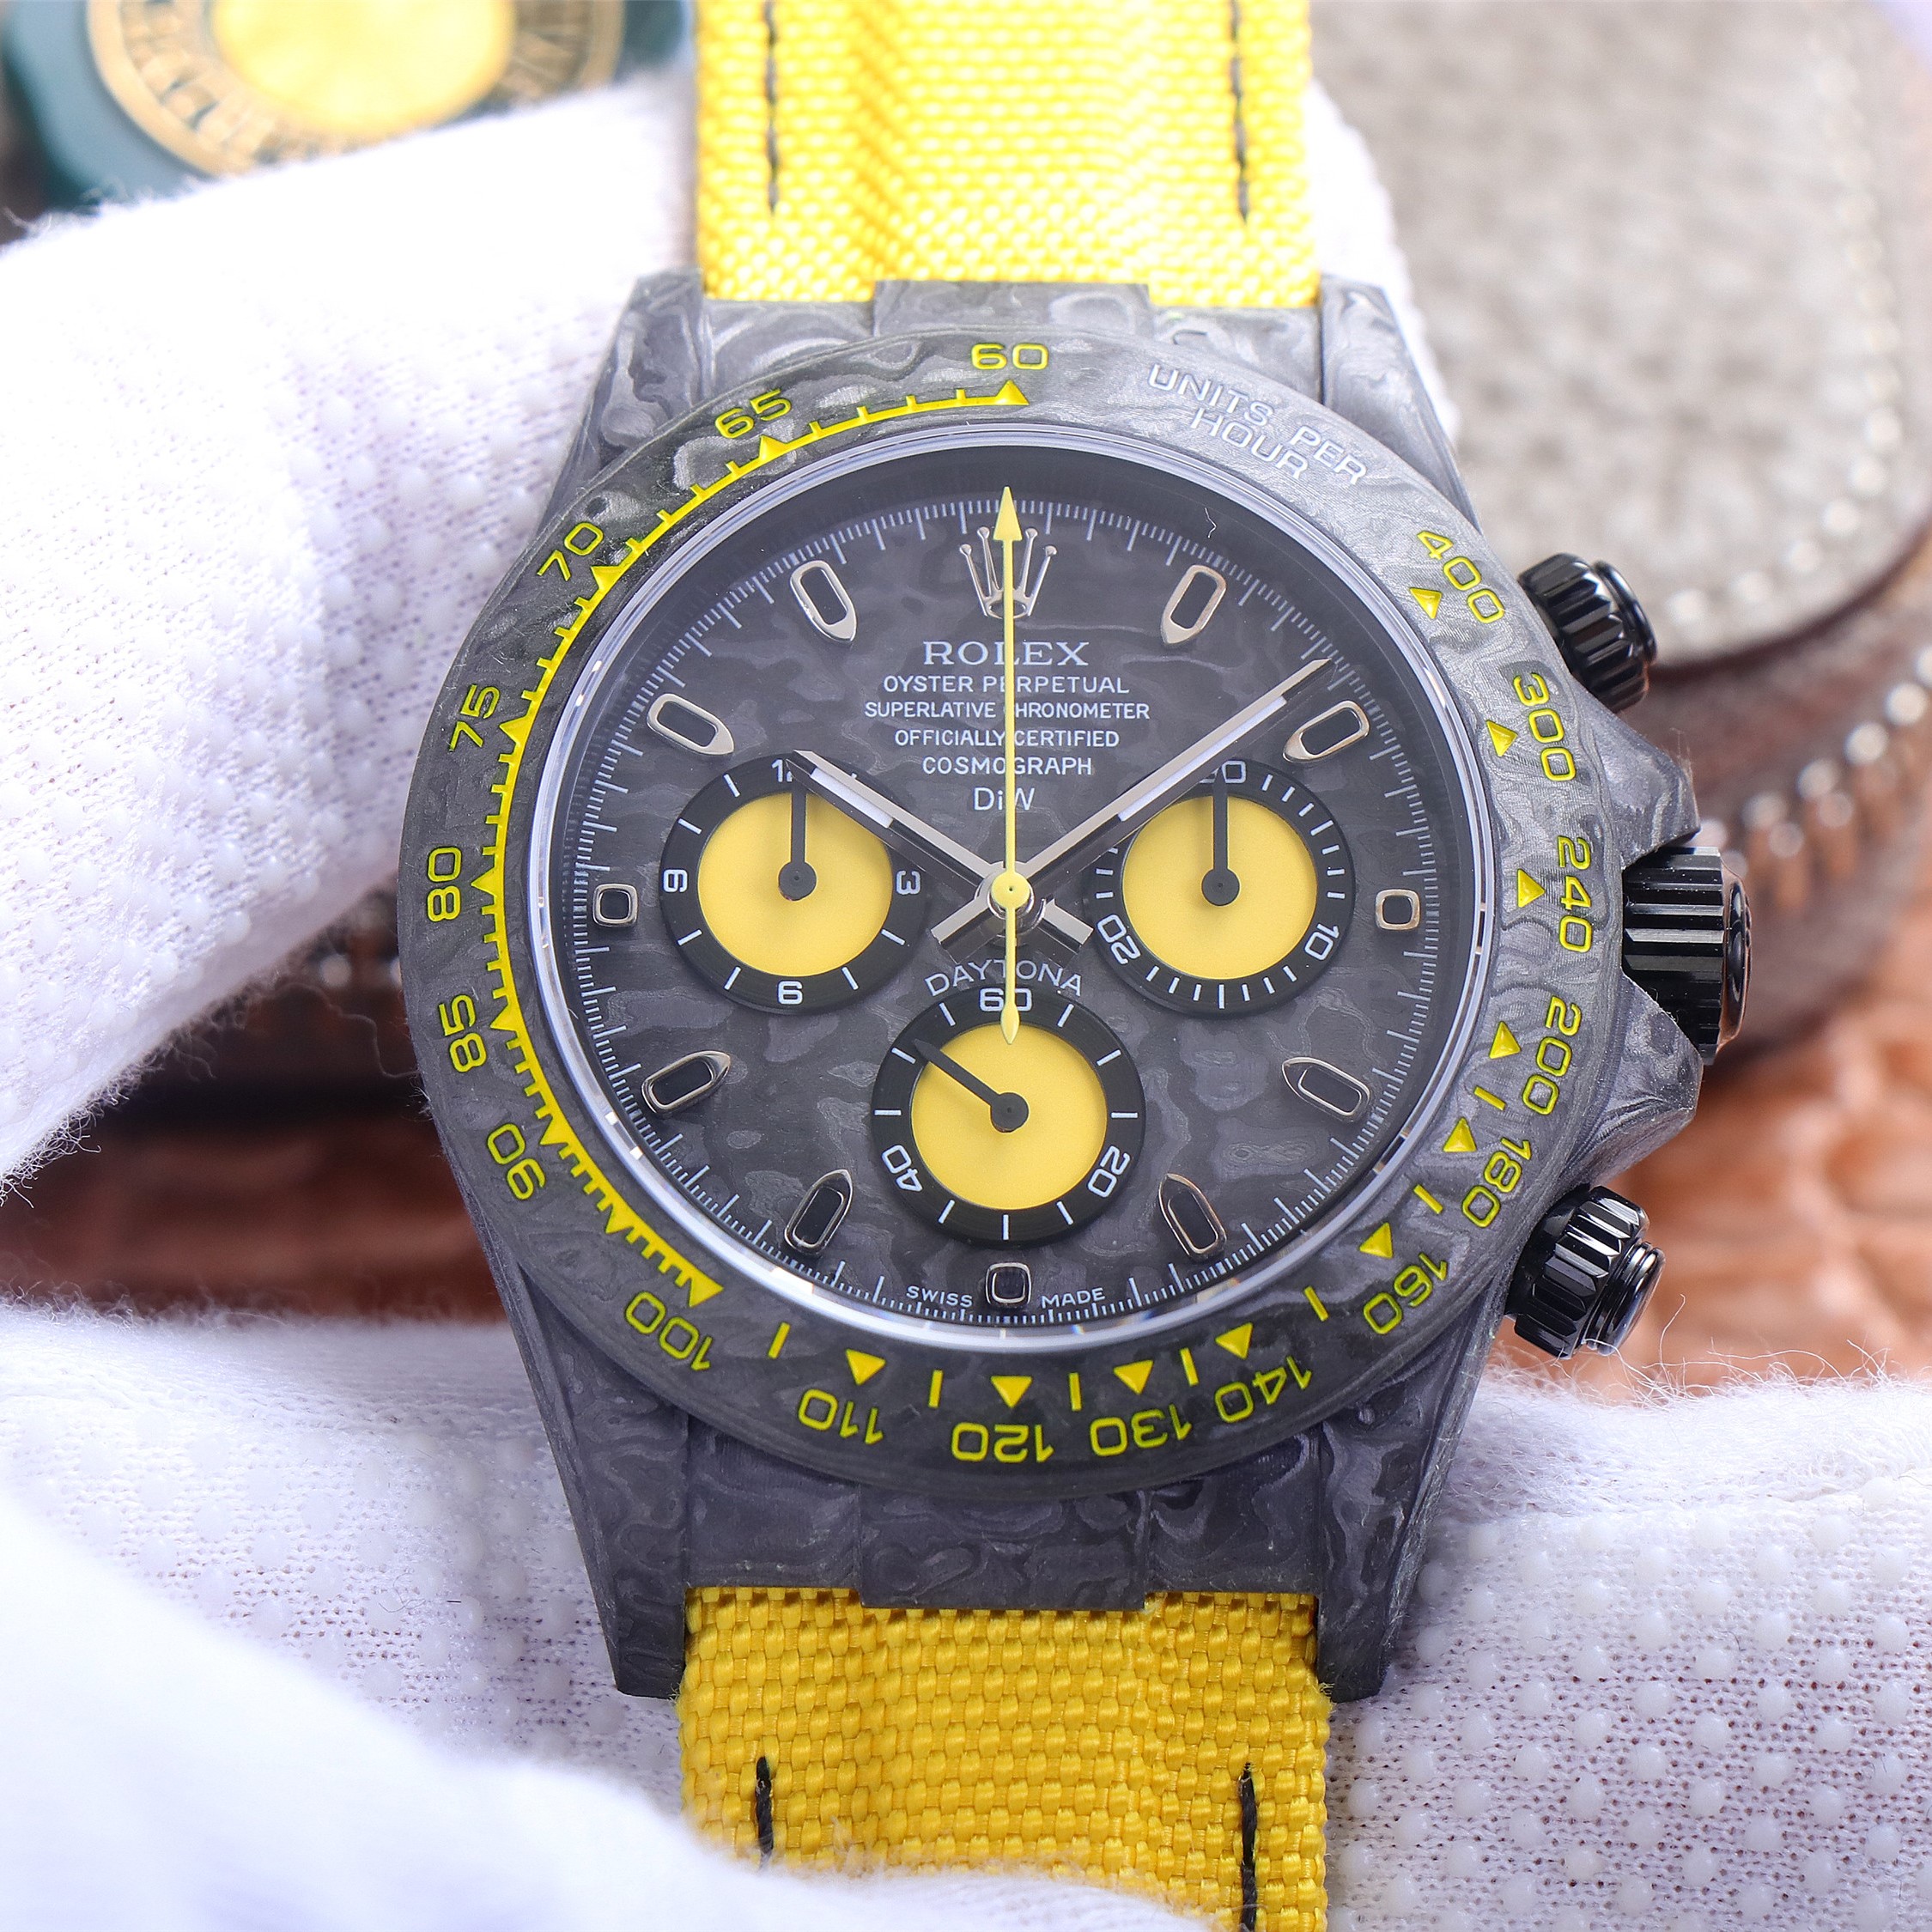 2023021204513537 - 高仿彩色迪通拿手錶價格 JH廠手錶勞力士迪通拿碳纖維定制版 復刻錶￥4580